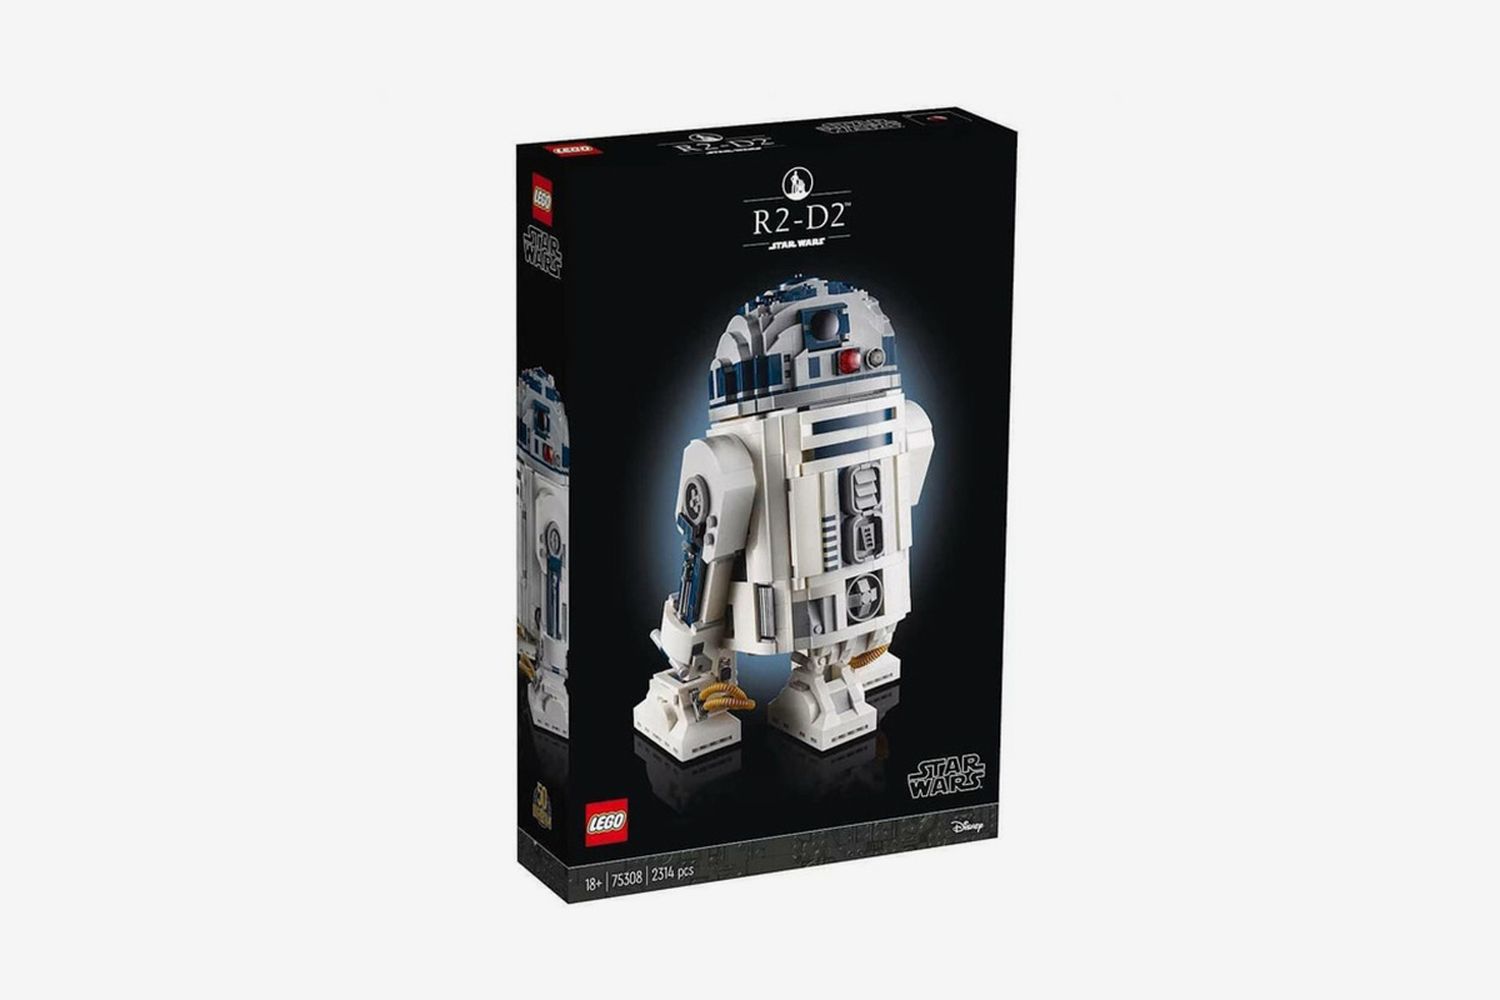 Star Wars R2-D2 Set